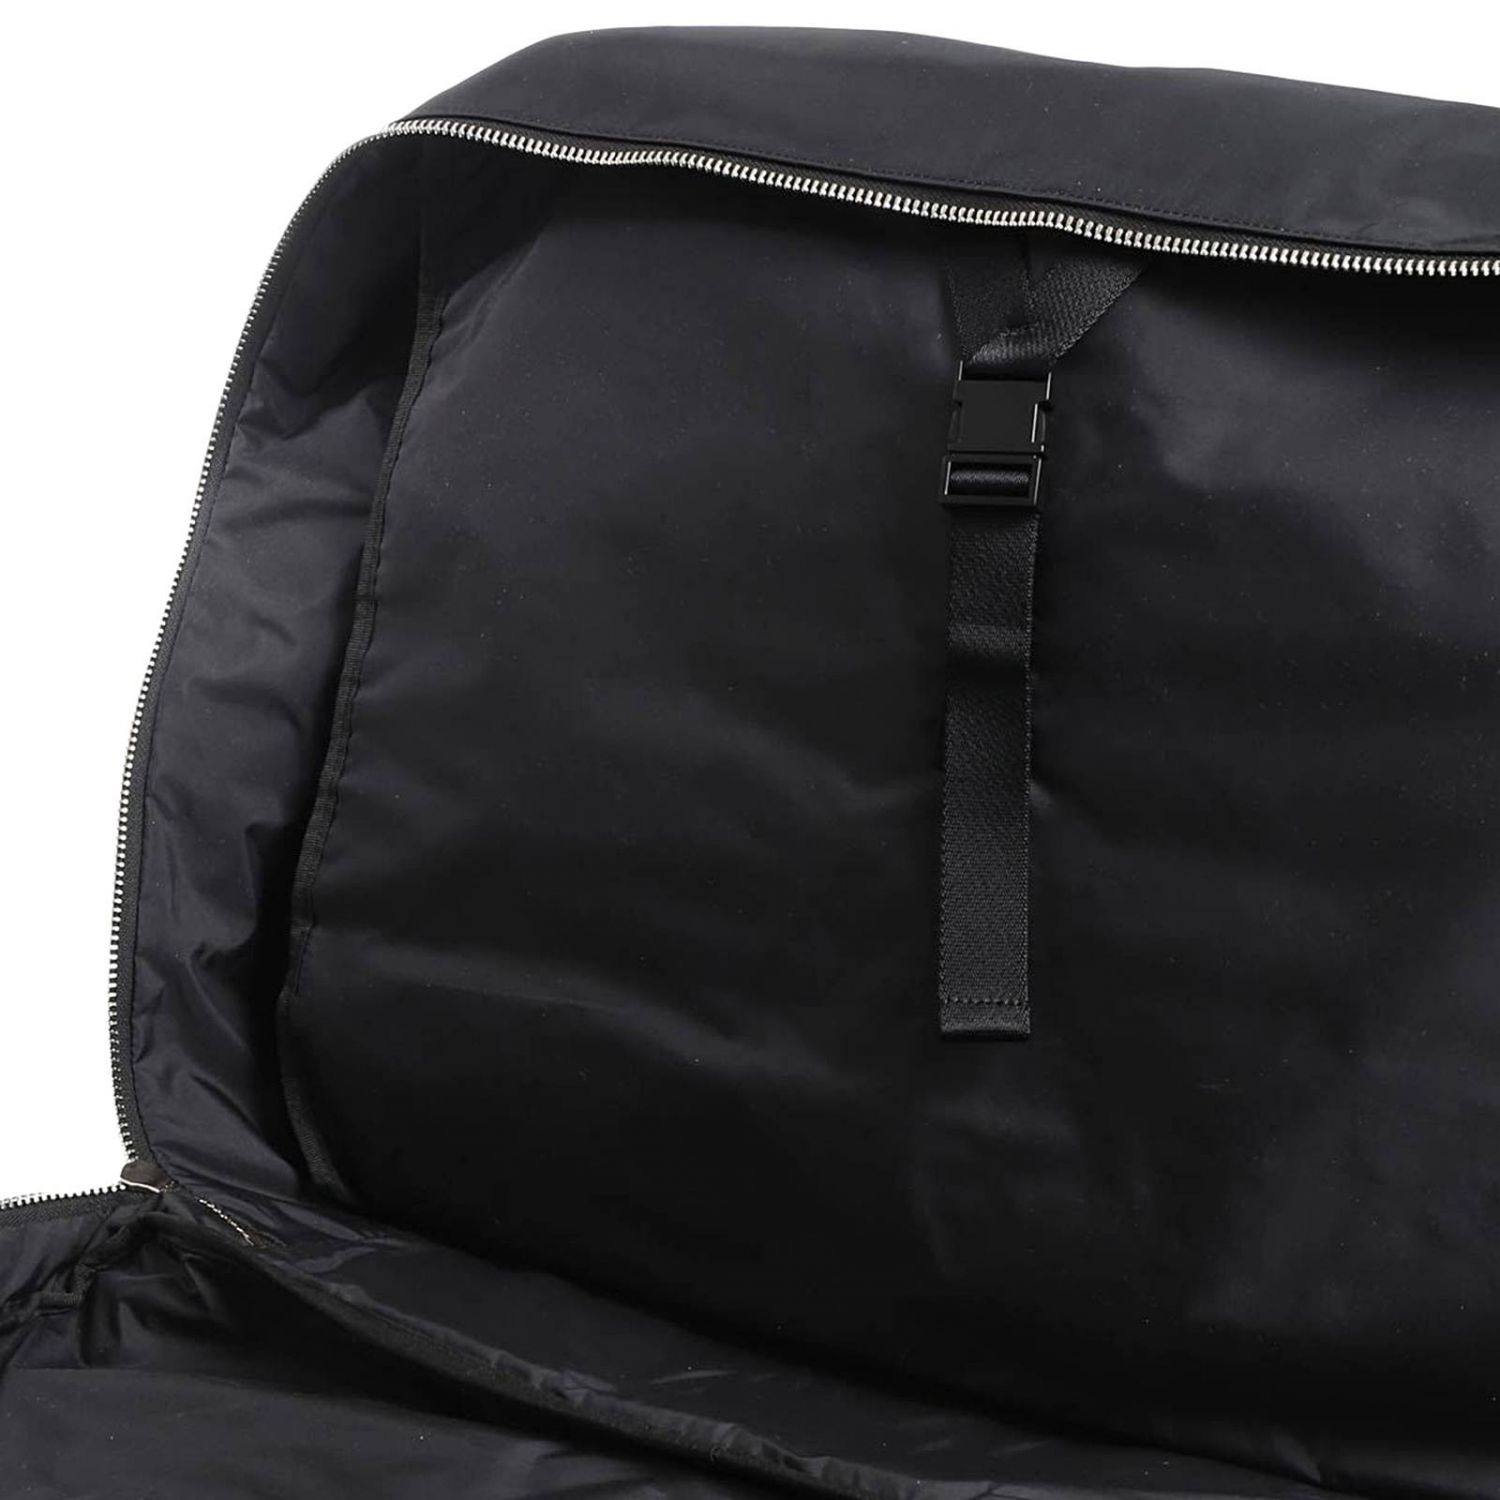 Paul Smith Outlet: Bags men London | Bags Paul Smith Men Black | Bags ...